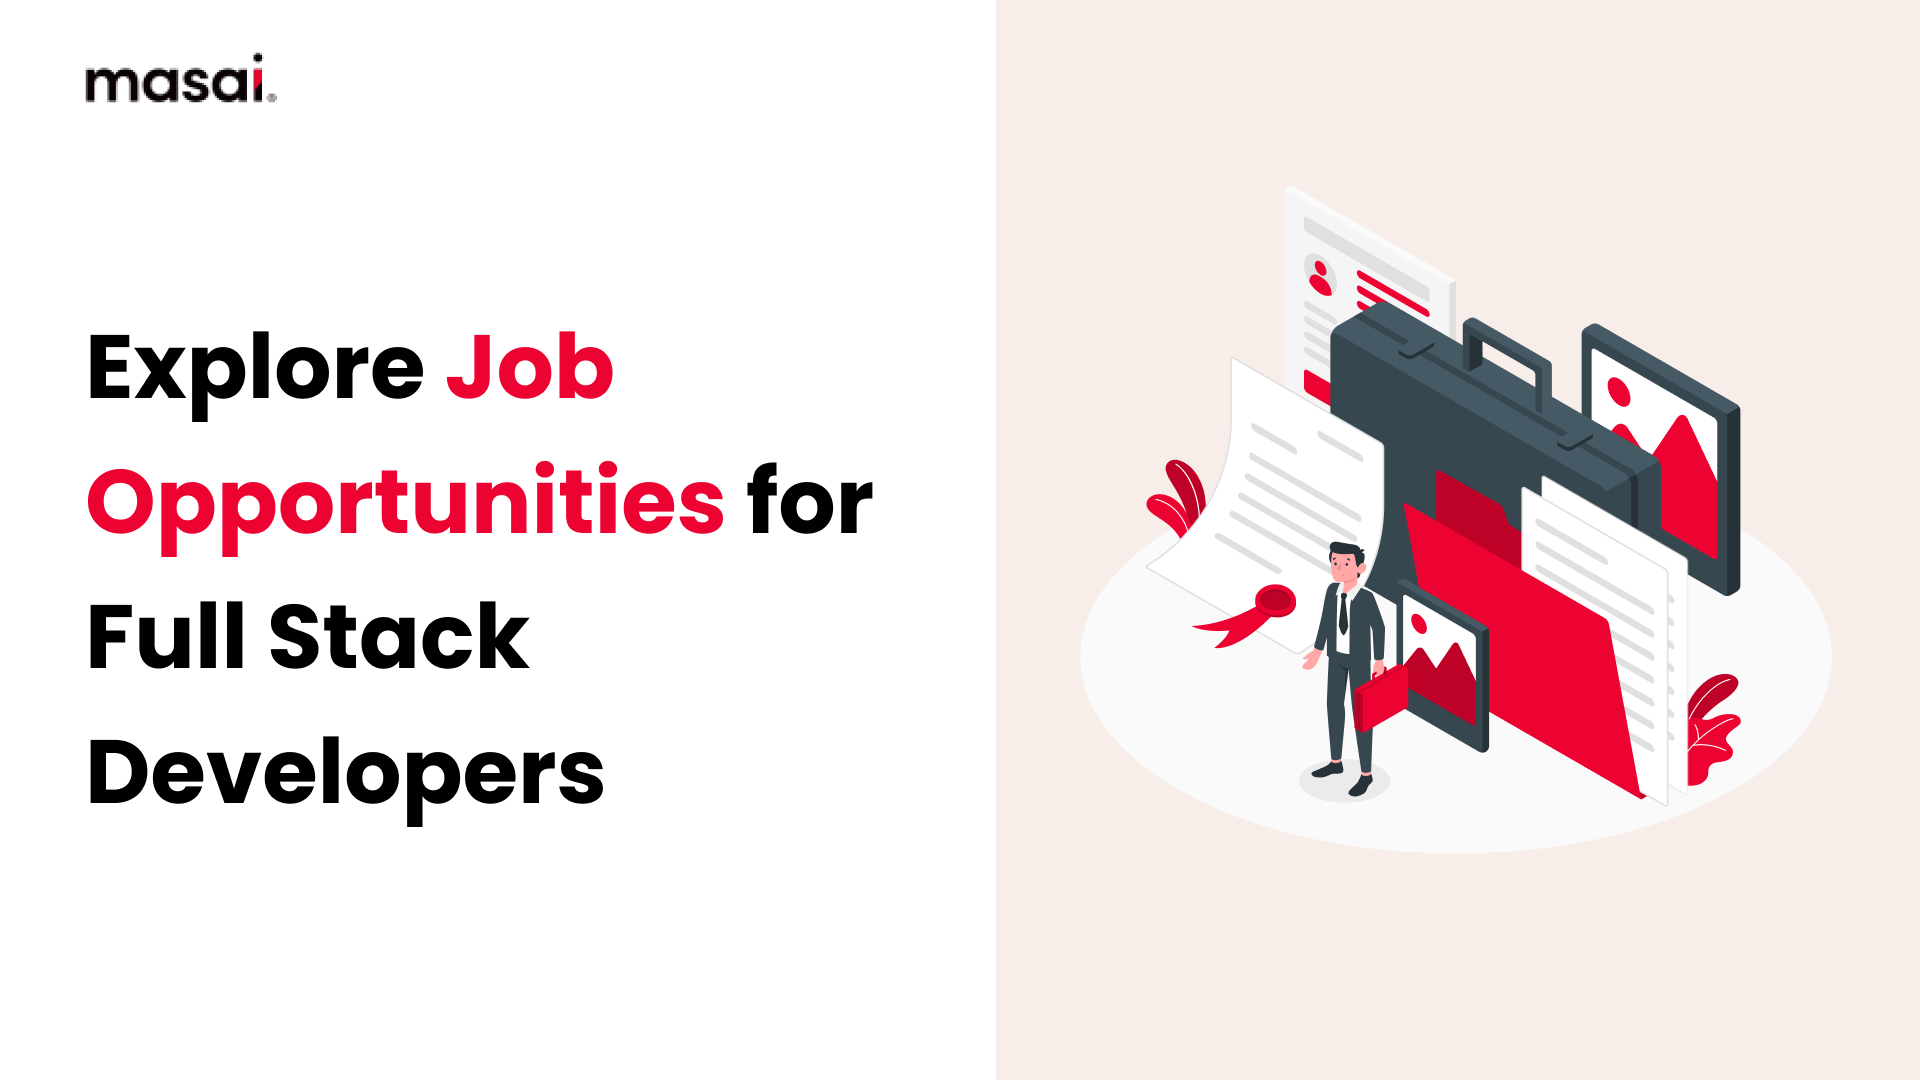 Jobs for full stack developers